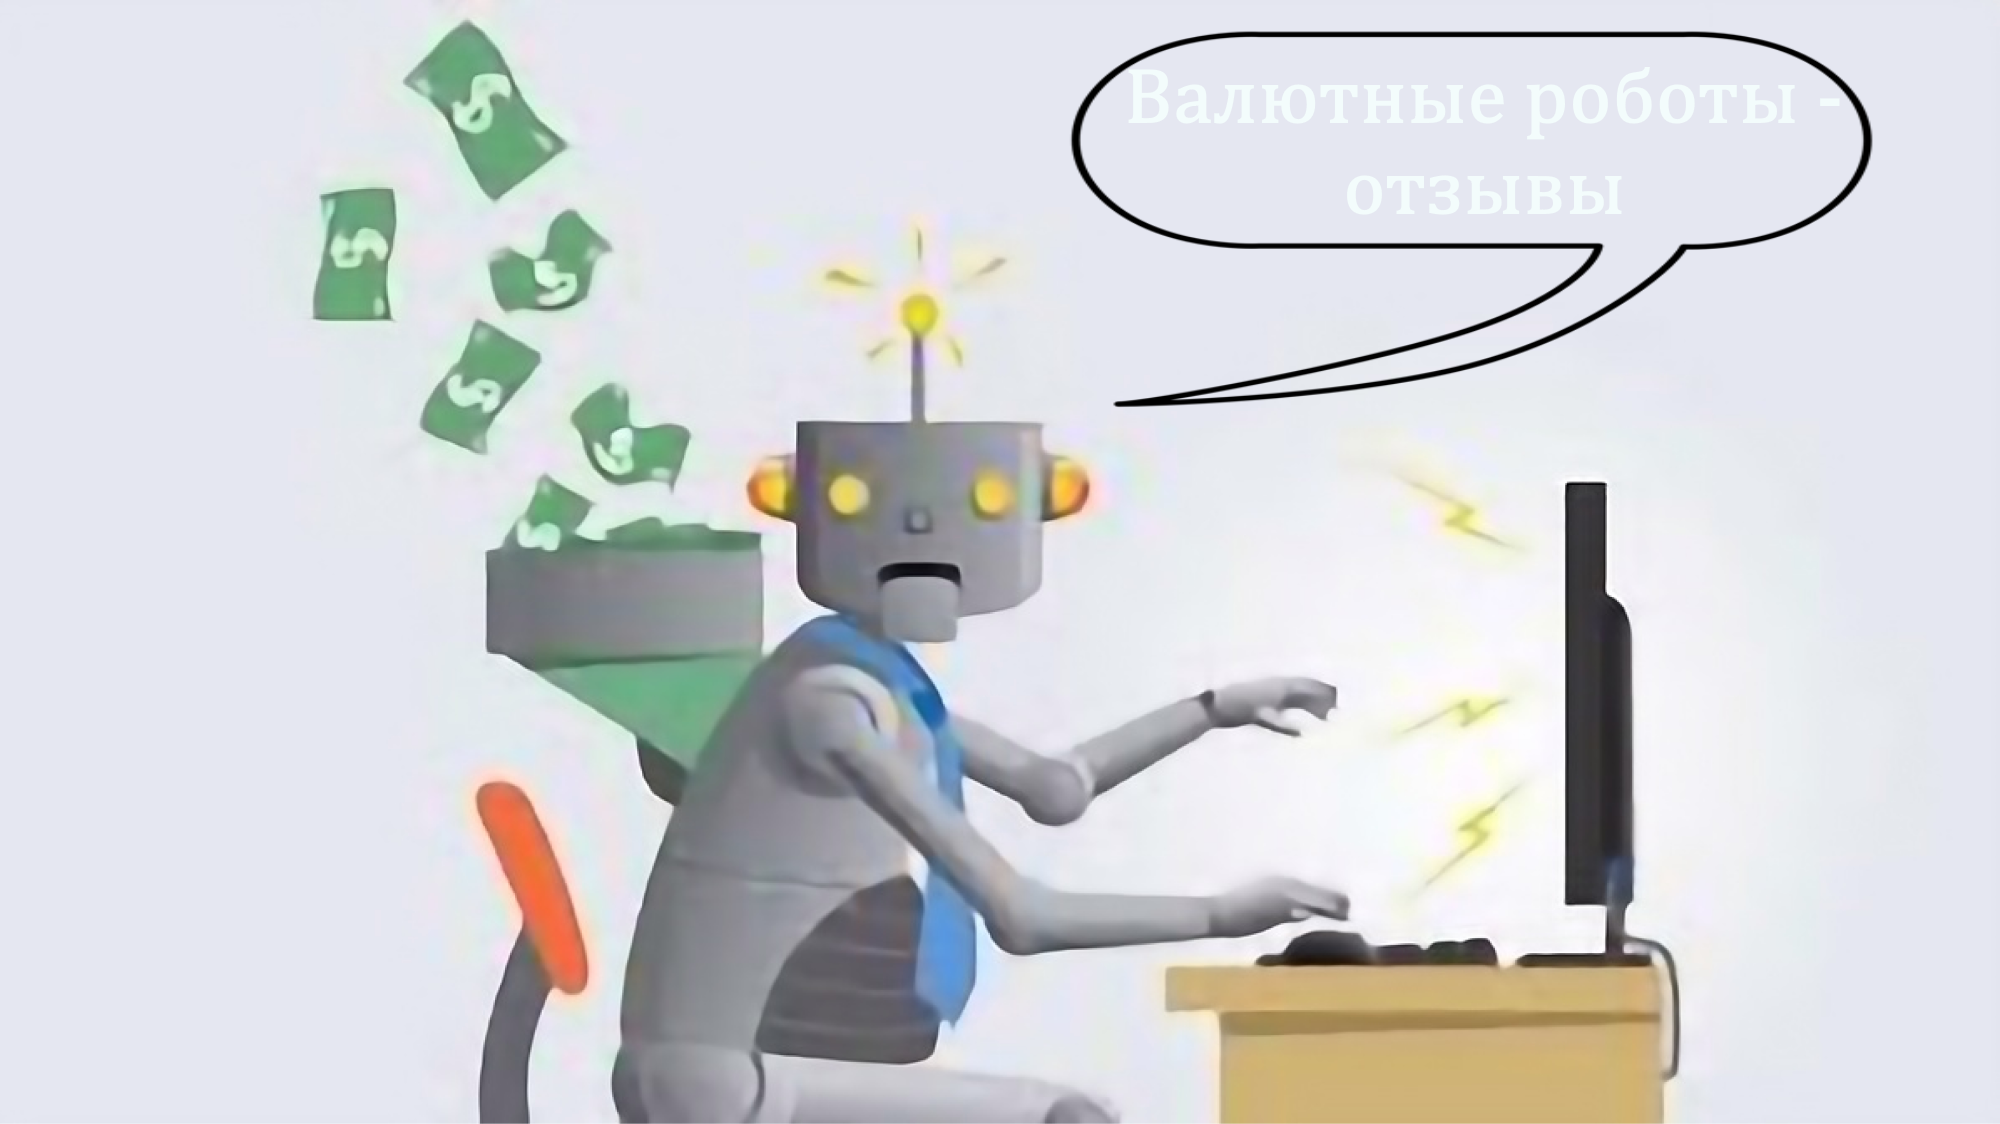 Валютные роботы отзывы